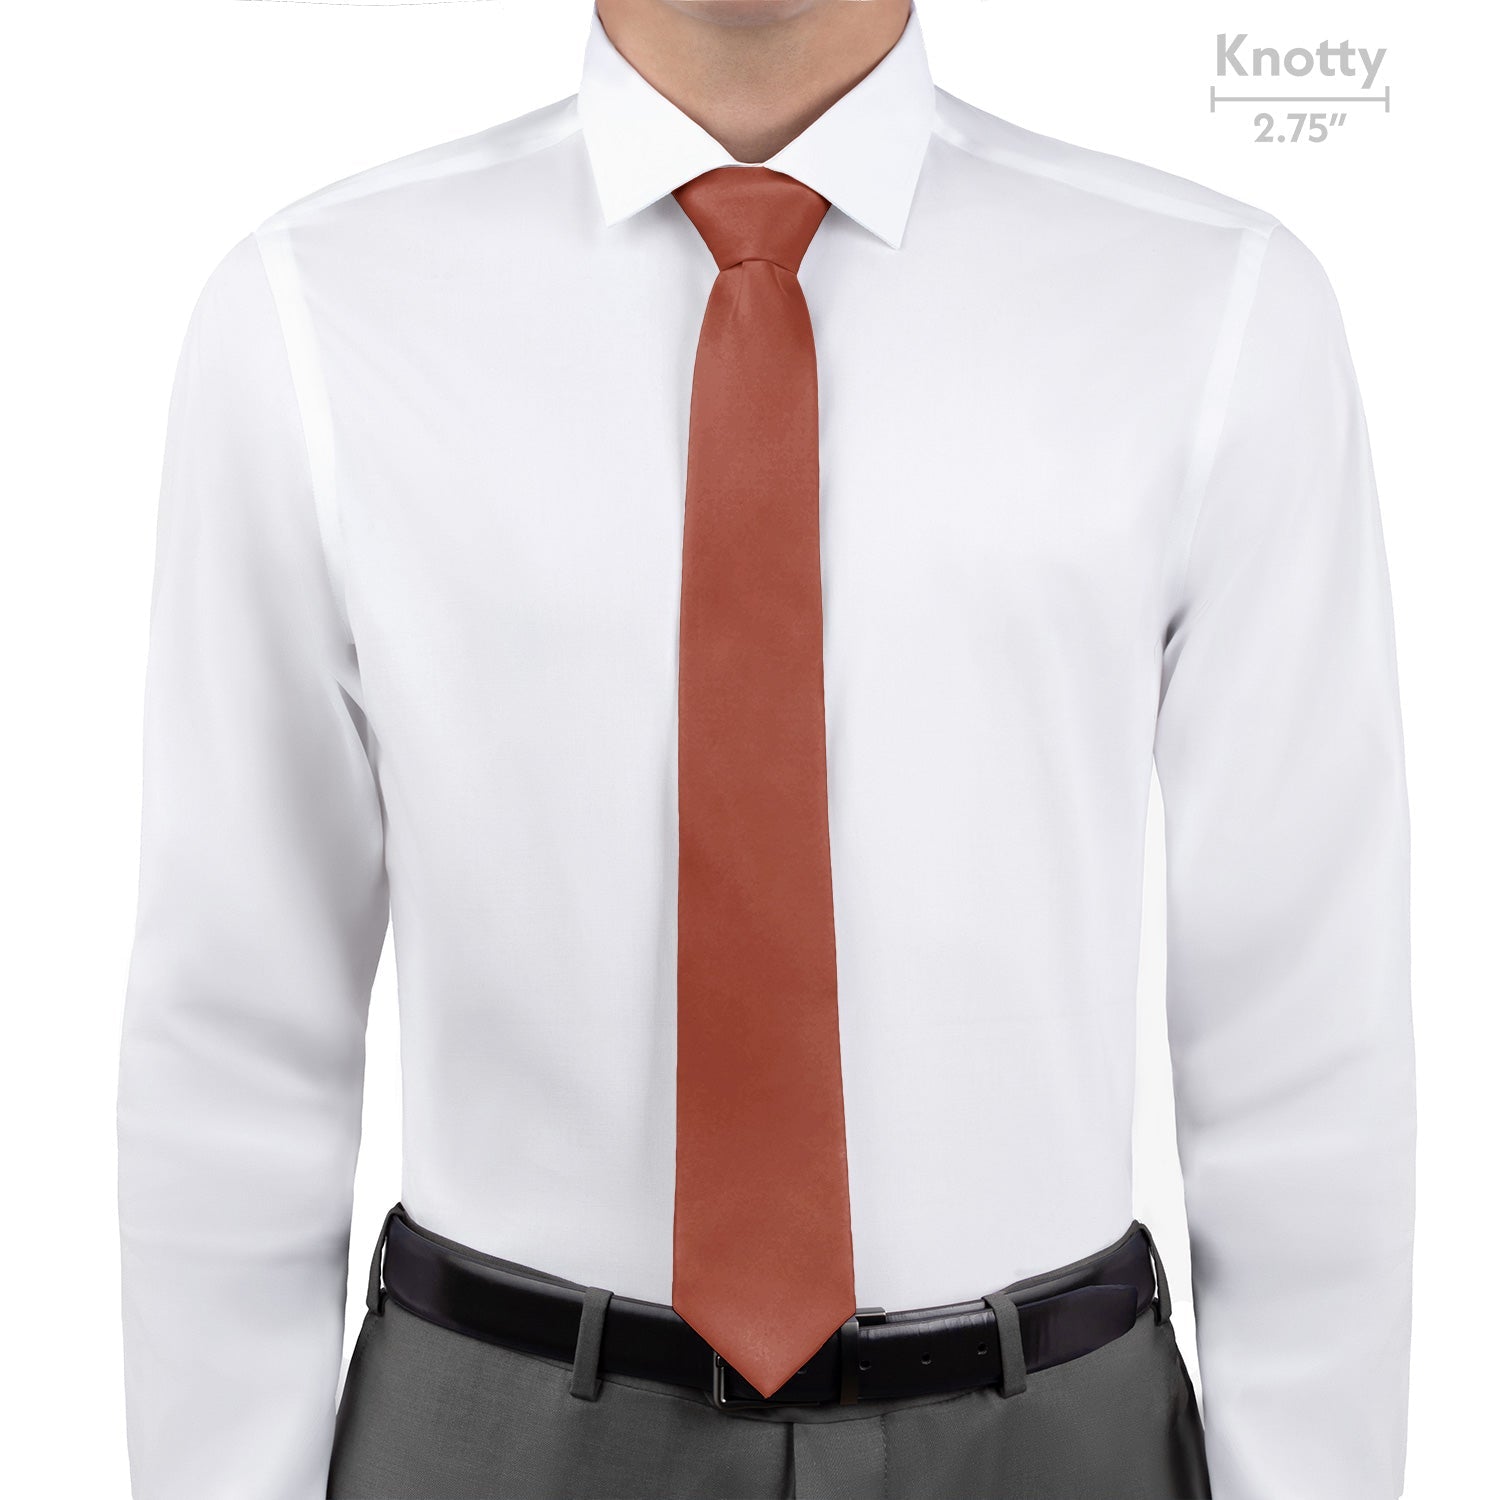 Azazie Auburn Necktie - Knotty - Knotty Tie Co.